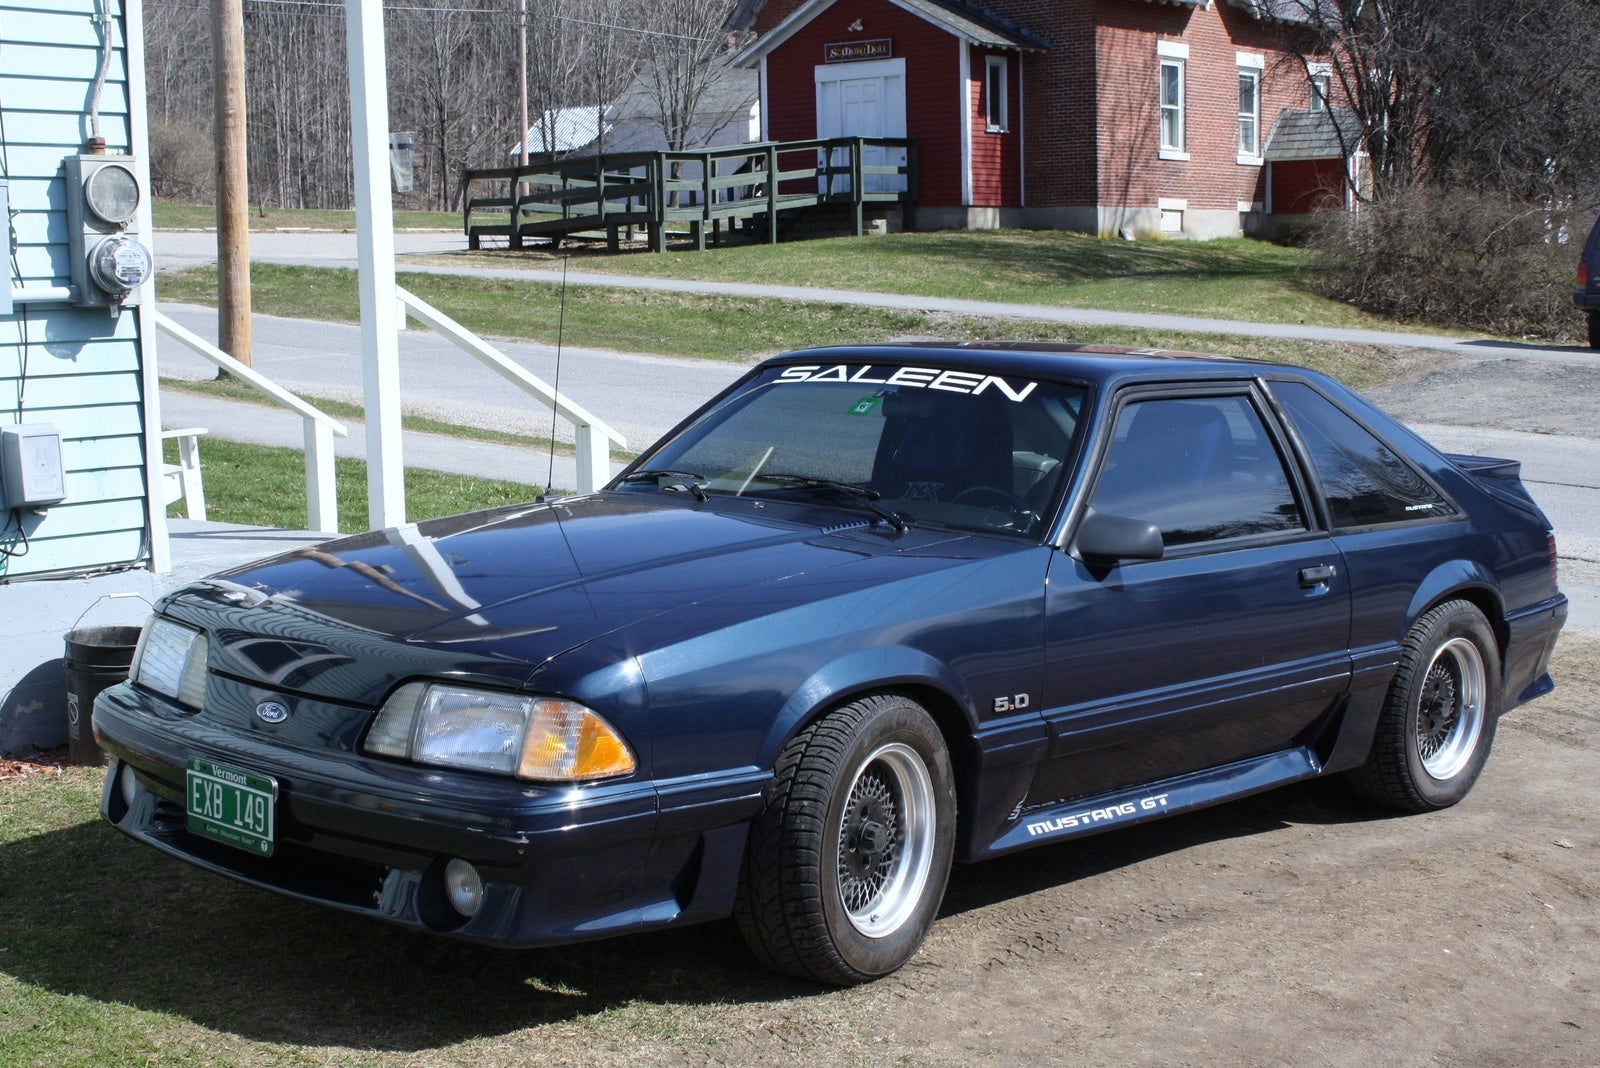 1989 Mustang Gt Value